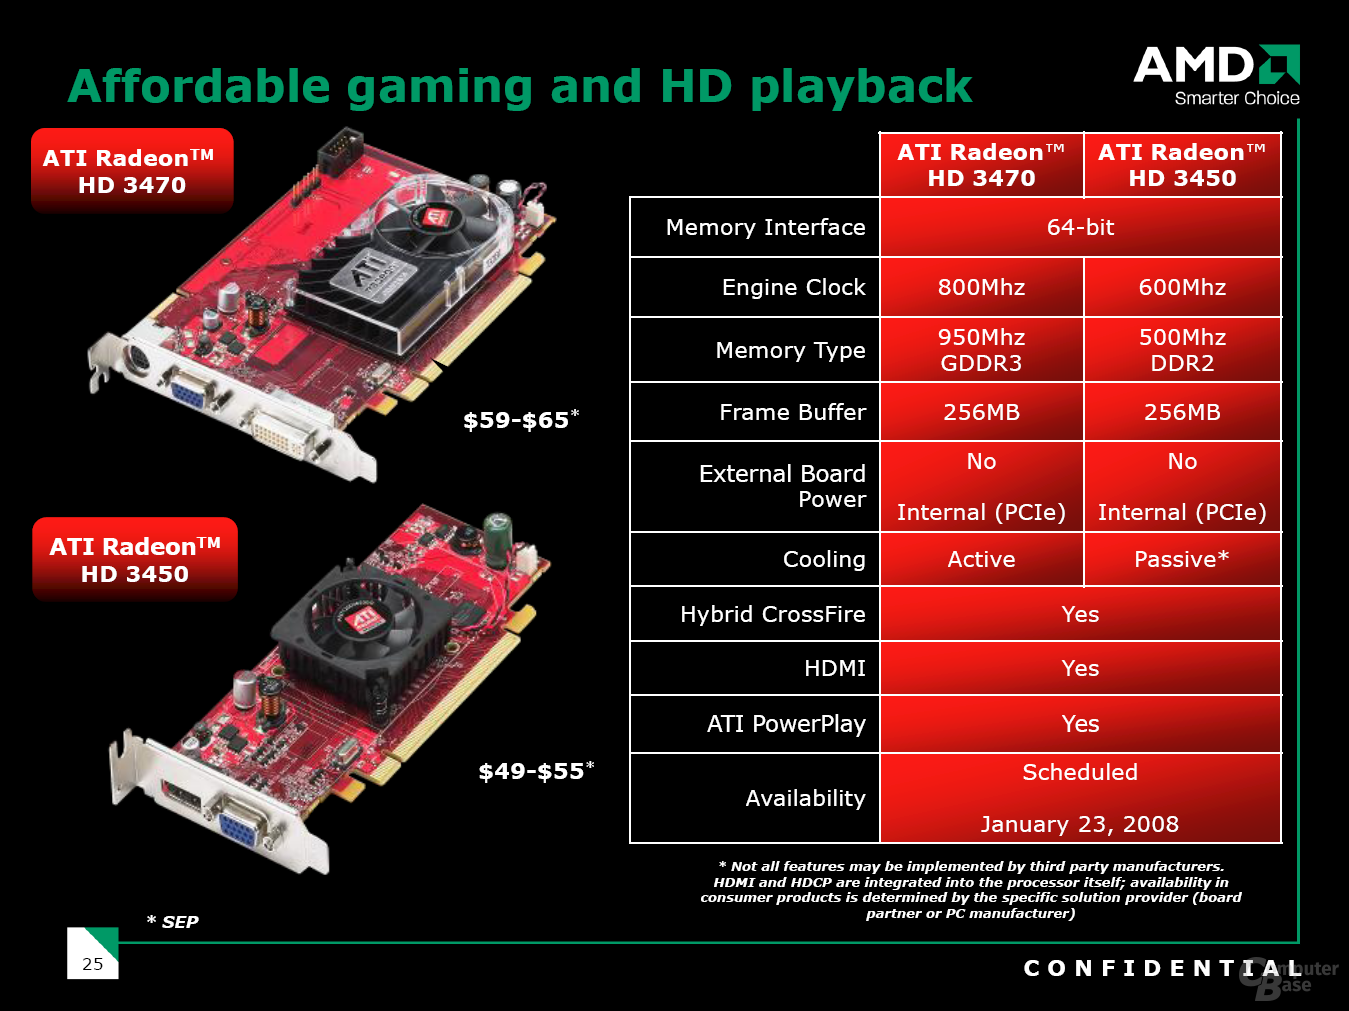 ATi Radeon HD 3400